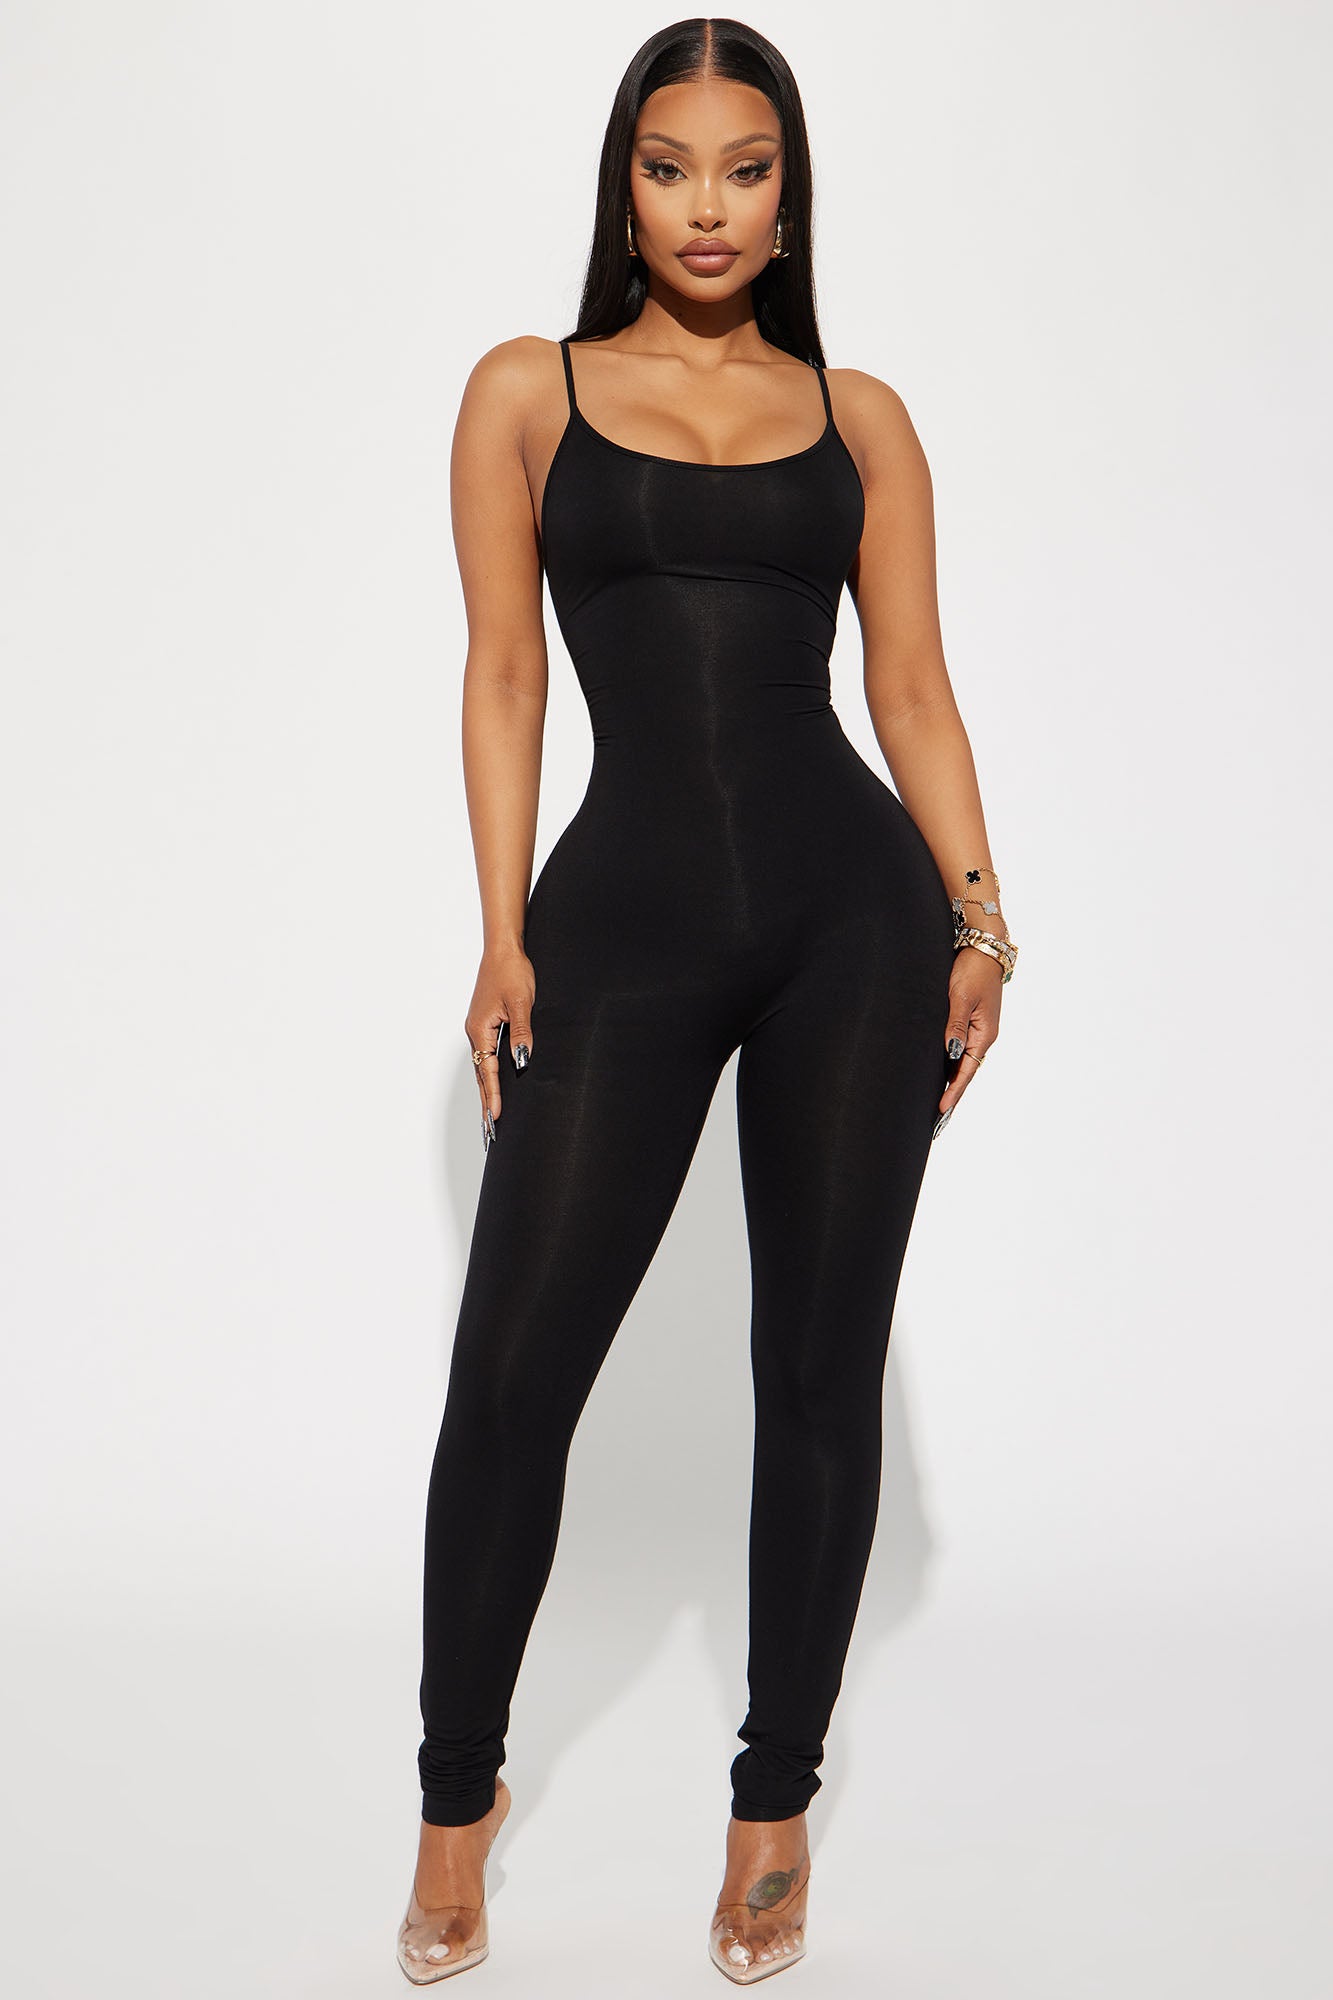 Black Classy Halter Jumpsuit | Lisa - BlackPink - Fashion Chingu